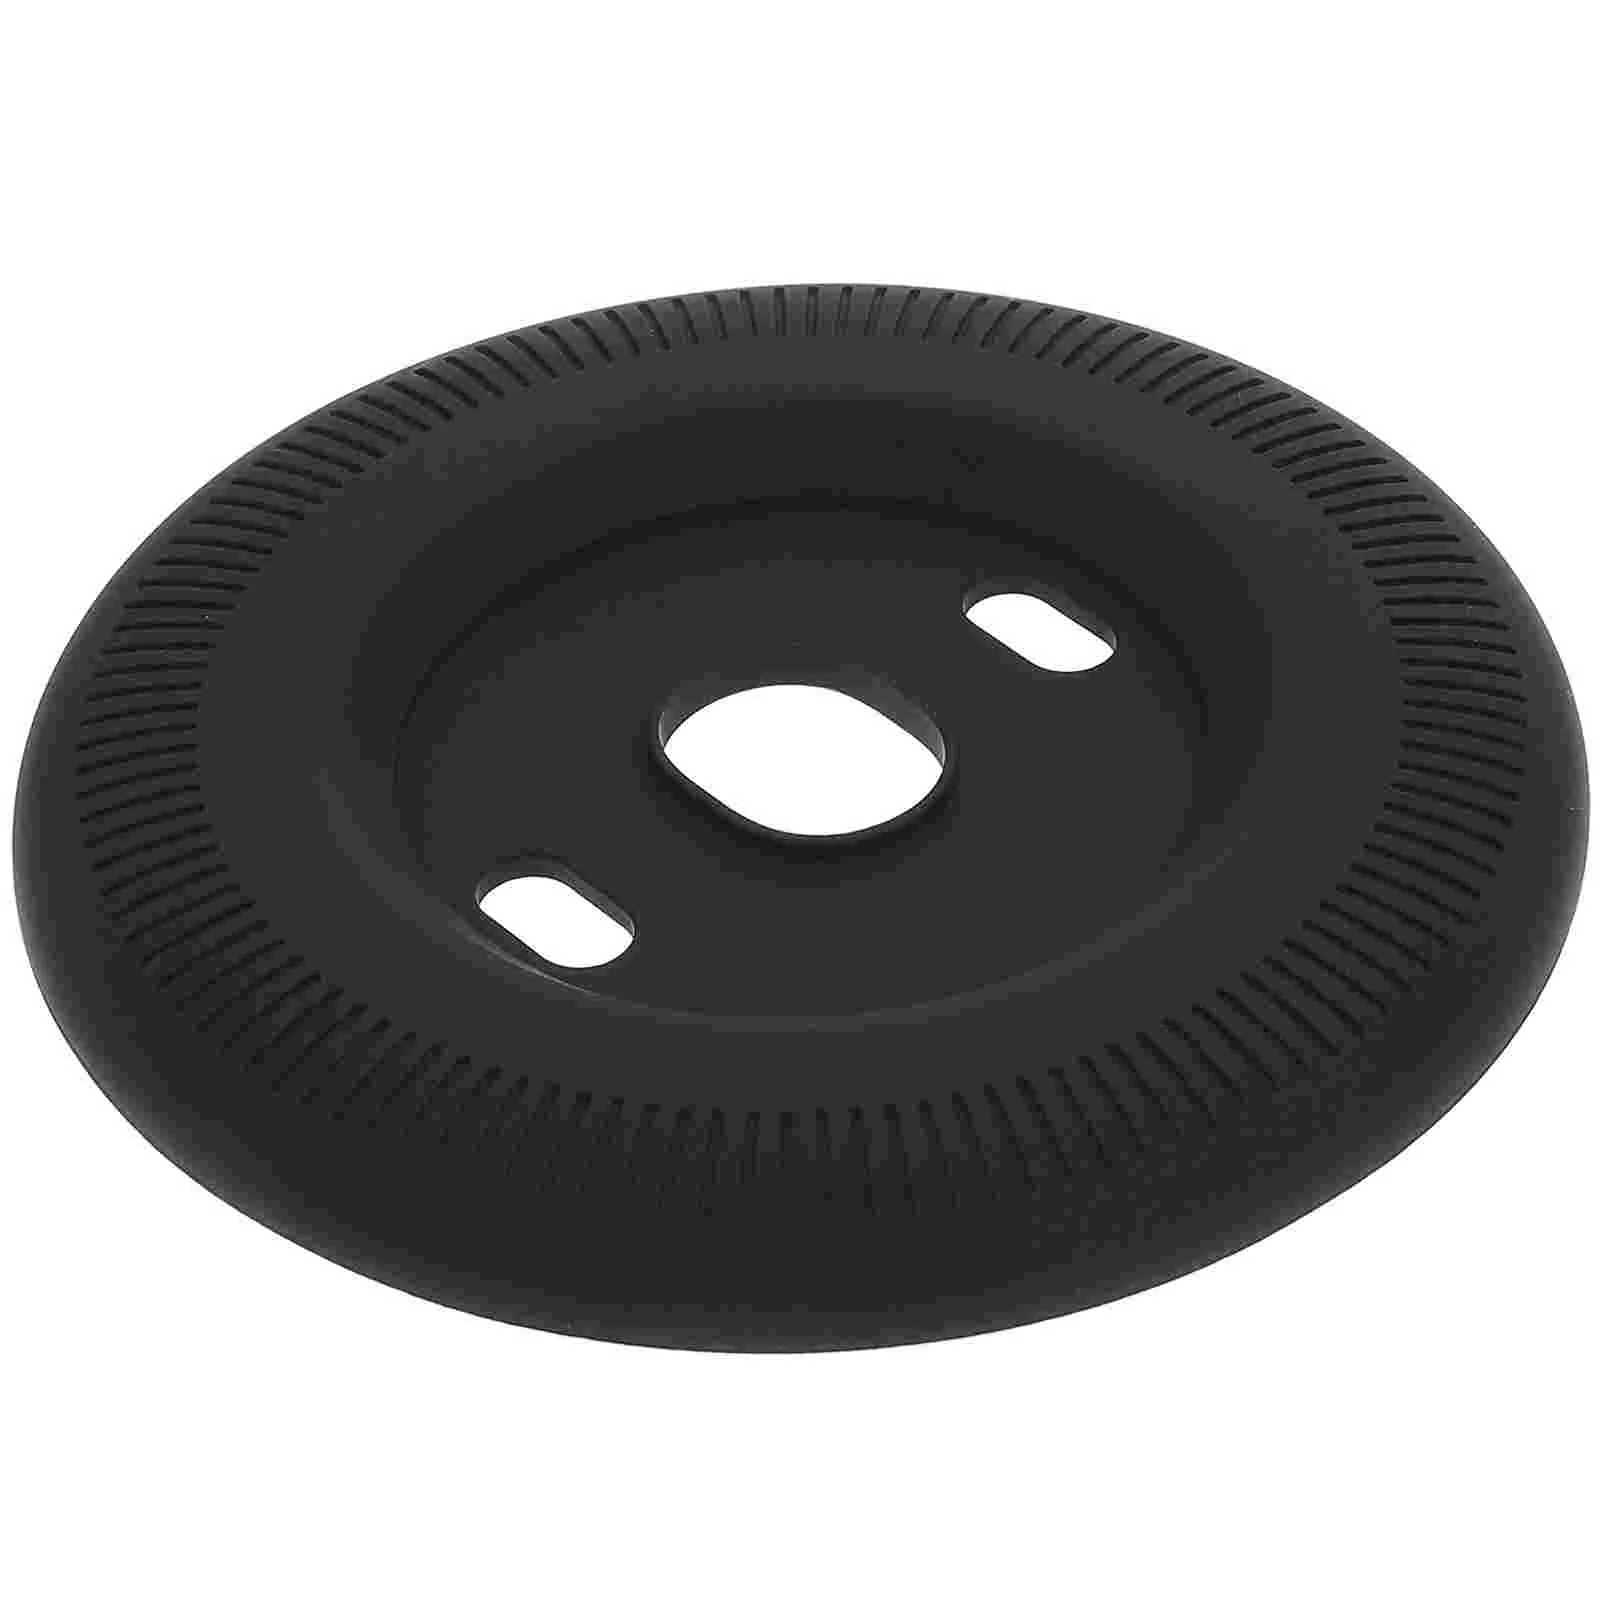 

Крышка термостата круглая настенная пластина для отделки комплекта аксессуаров термостаты домашнее крепление